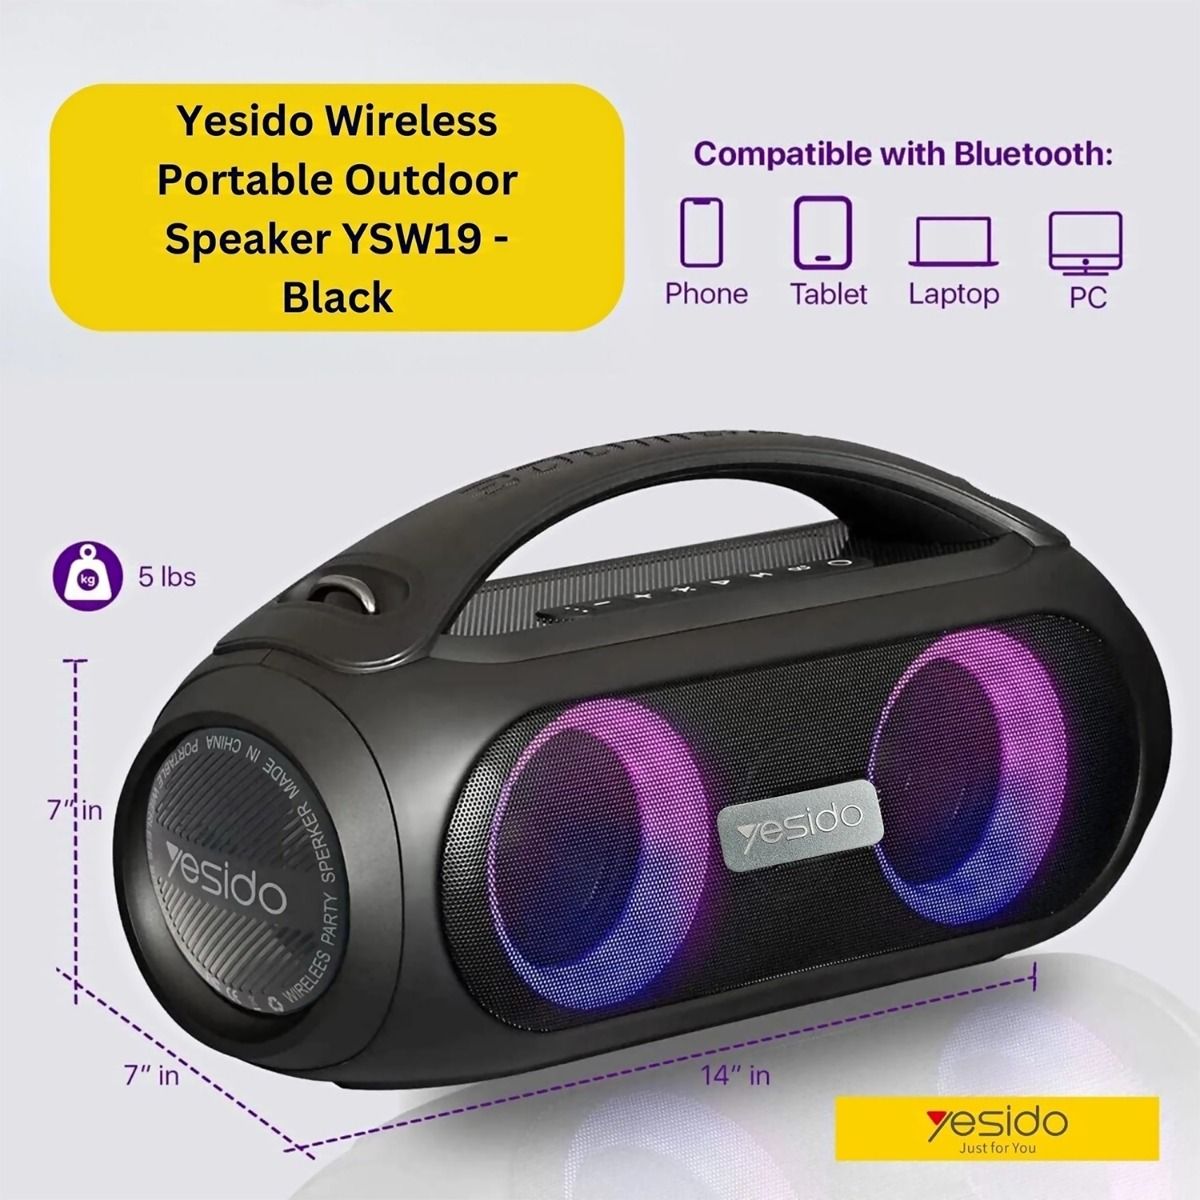 Yesido YSW19 Wireless Portable Outdoor Speaker – Black